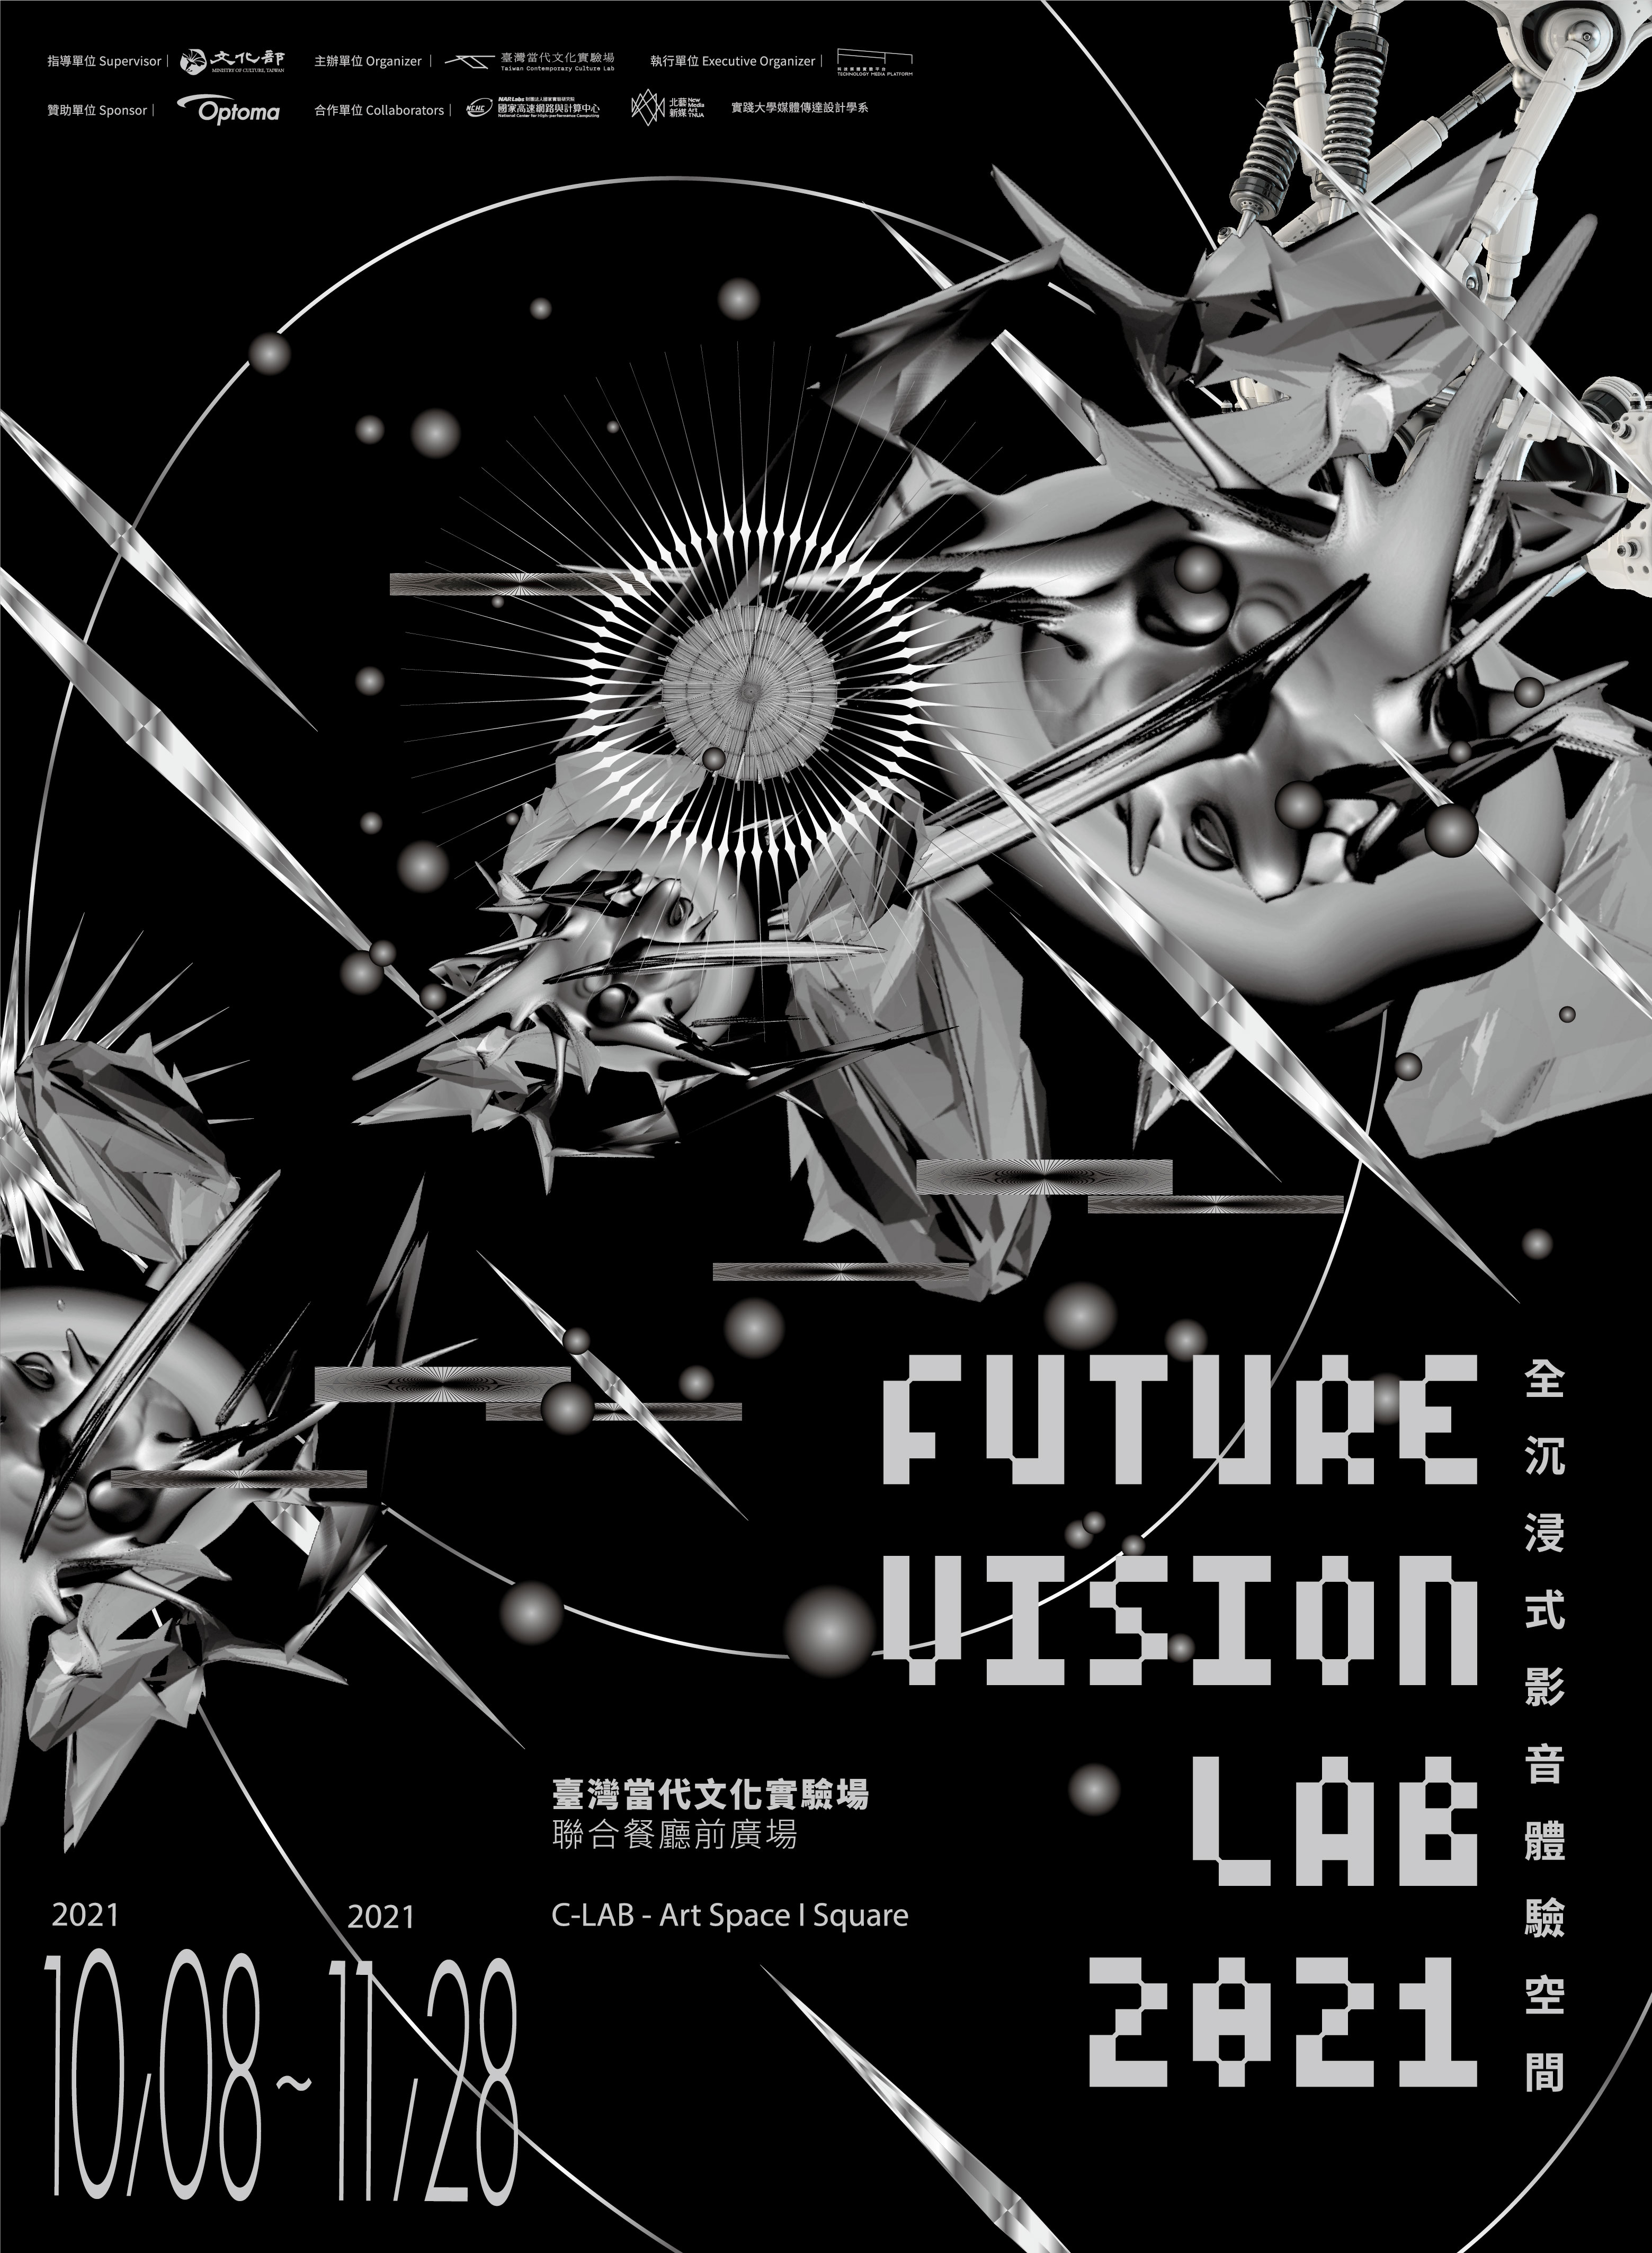 C-LAB Future Media Festival "FUTURE VISION LAB 2021"